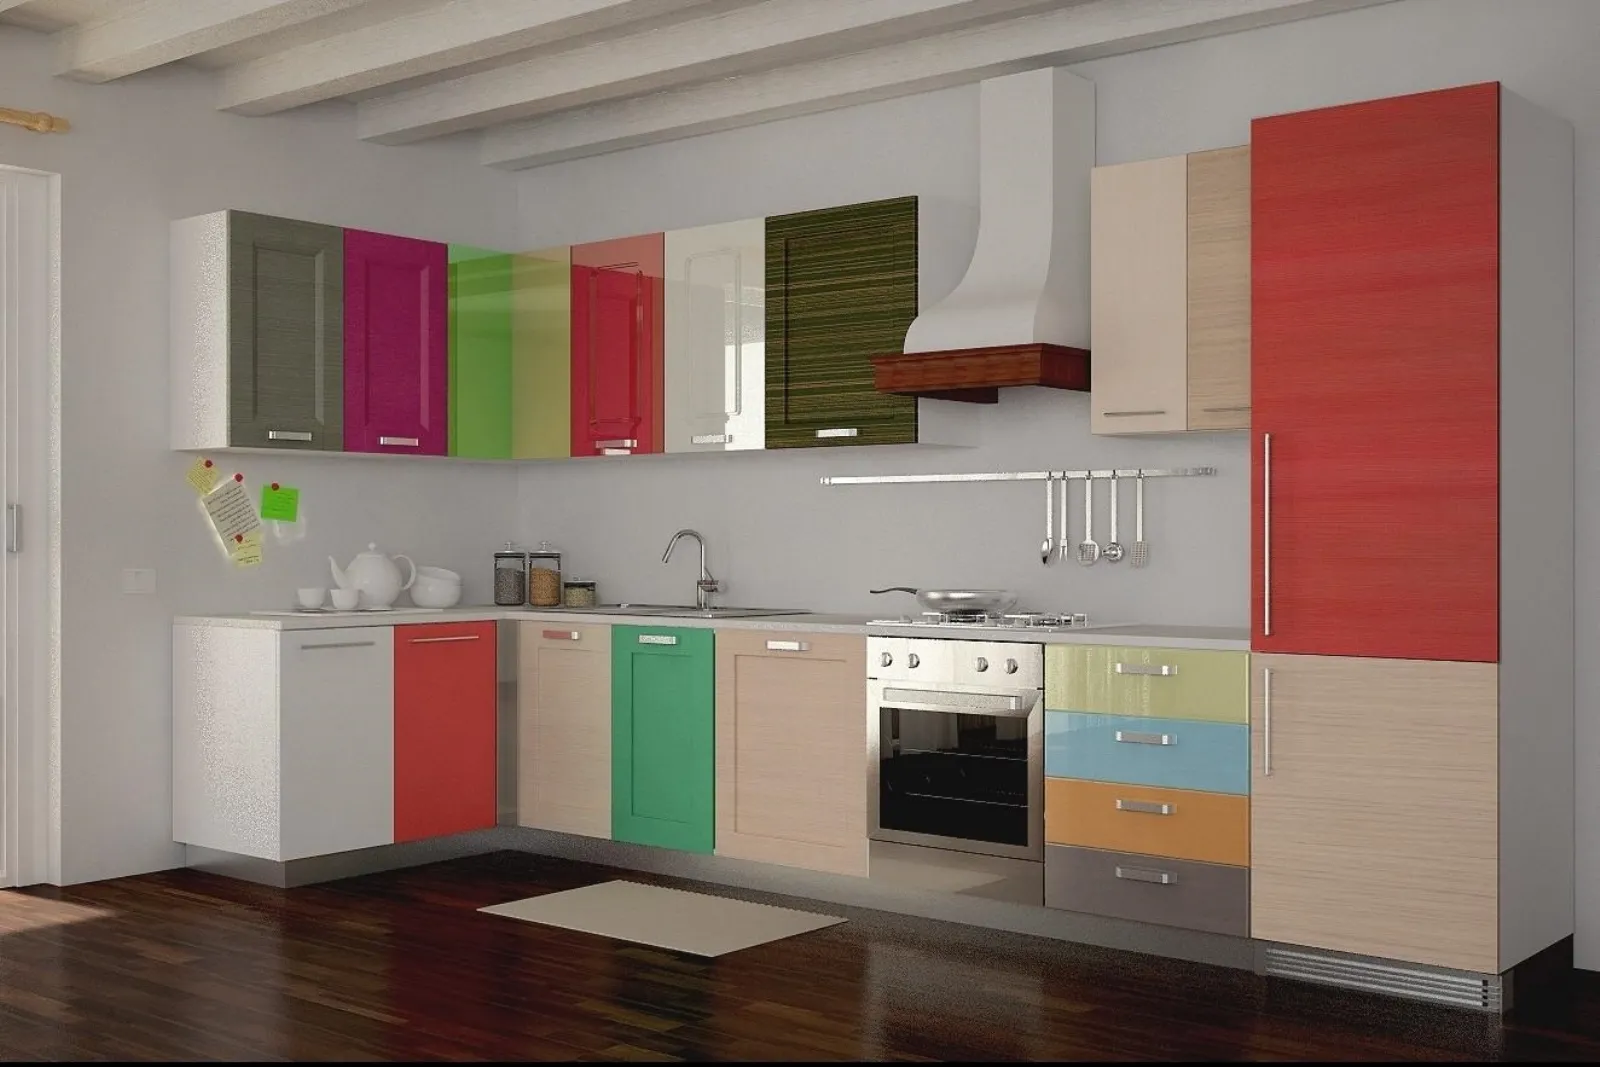 Материалы кухни пластик. Разноцветный кухонный гарнитур. Фасады для кухни. Кухня с разноцветными фасадами. Мебельные фасады для кухни.